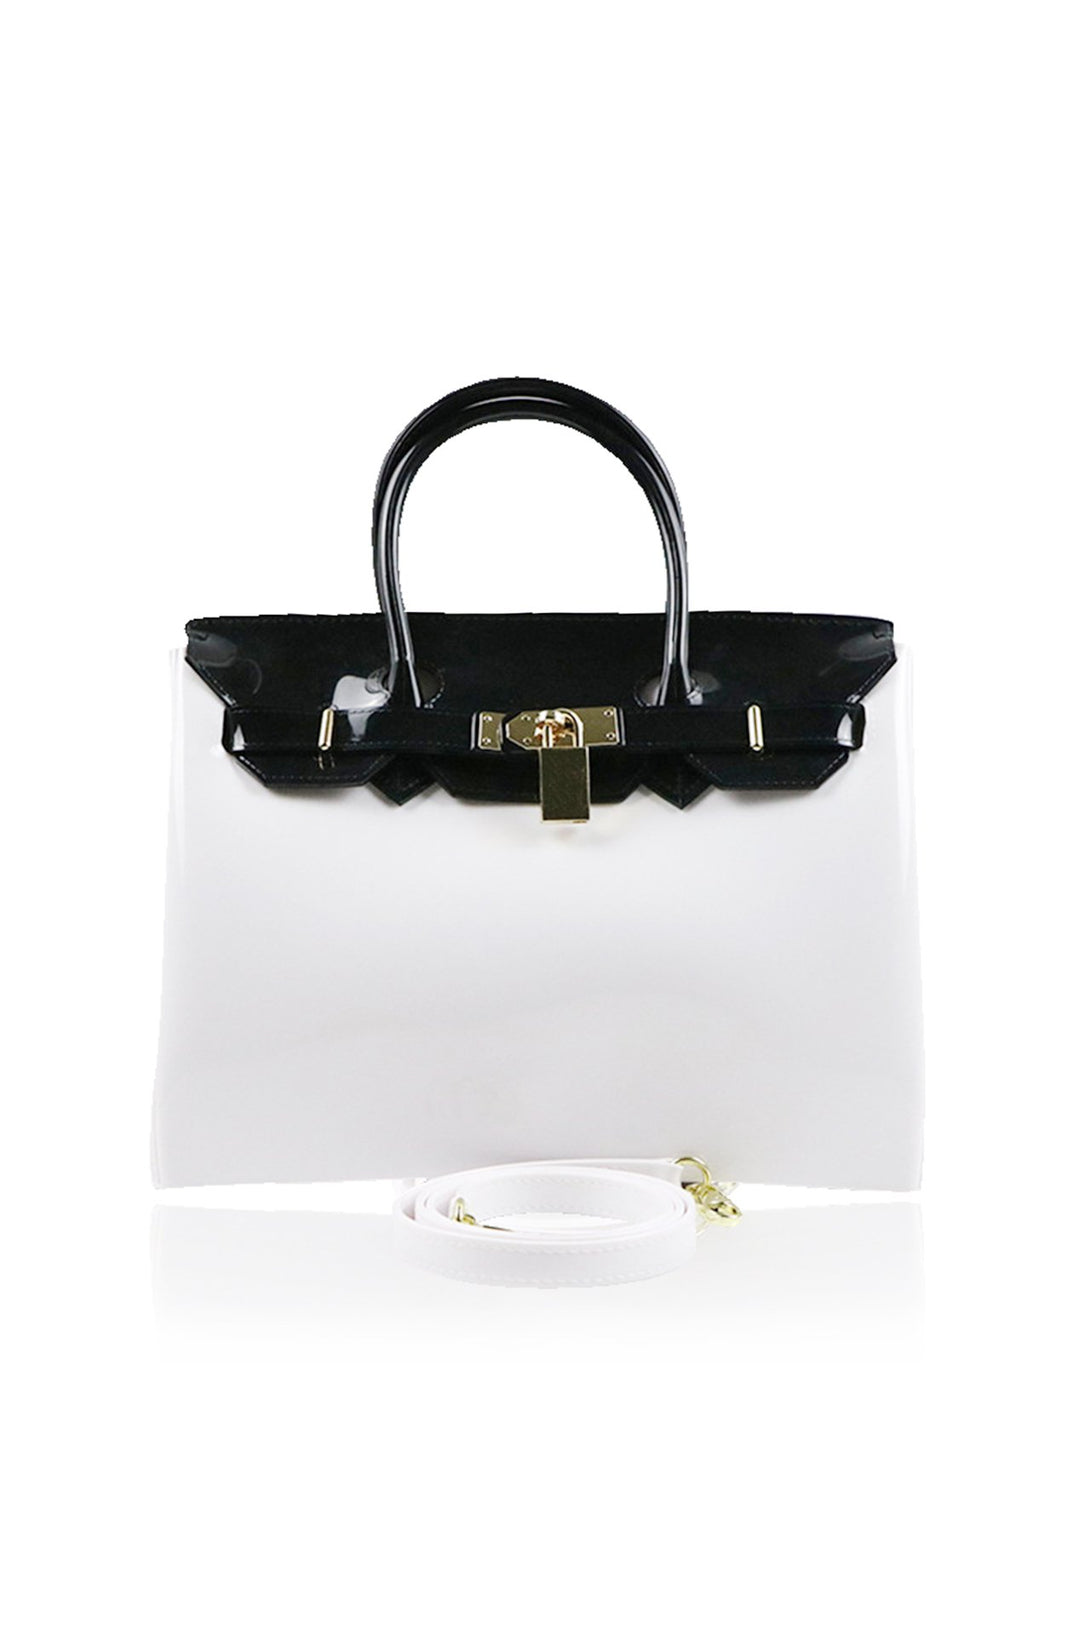 White-Handbag-For-Women